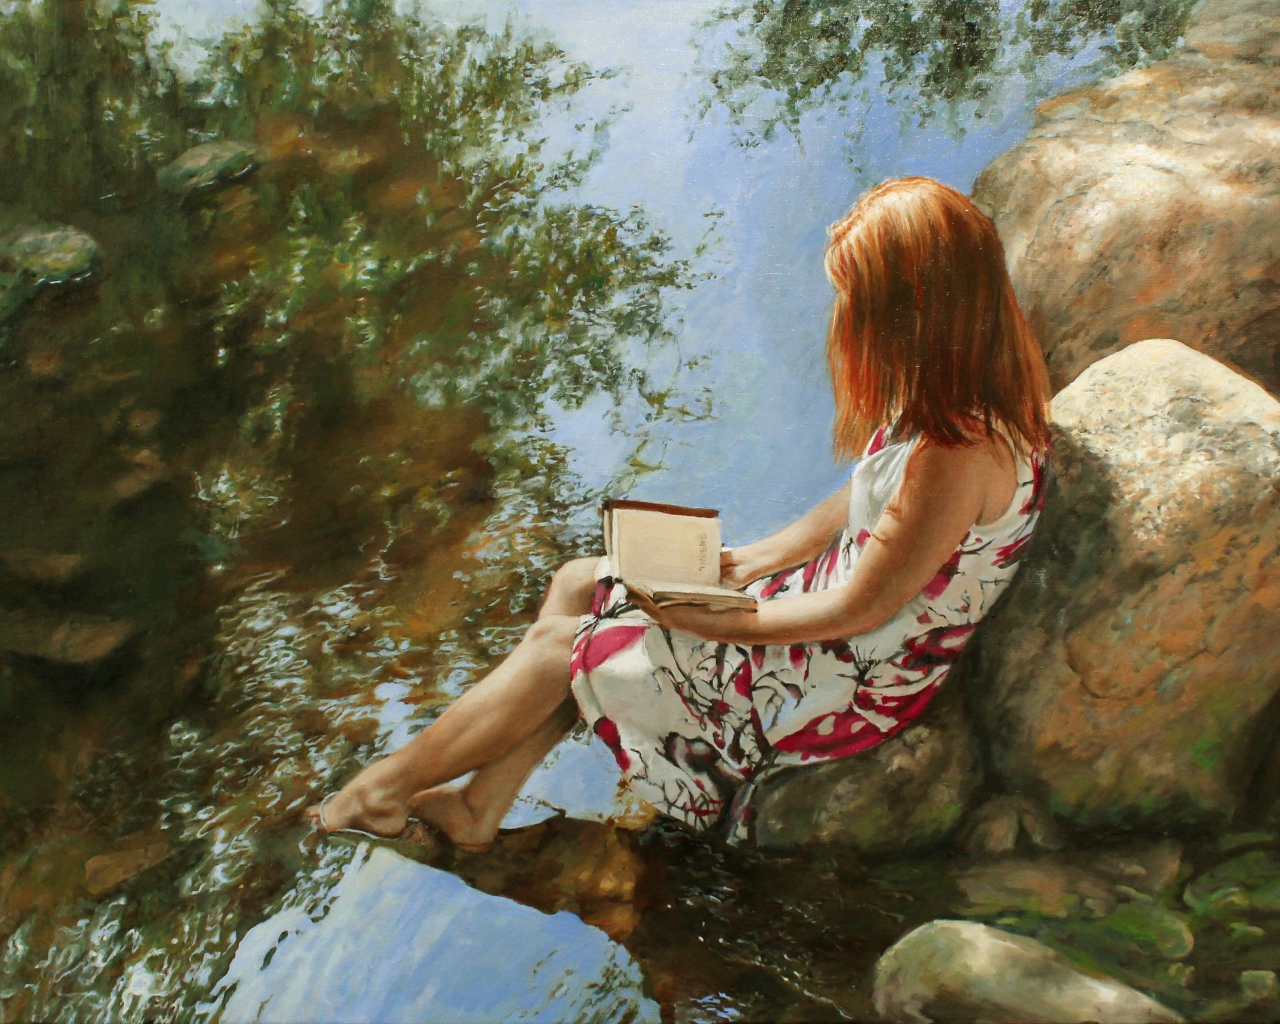 Нарисованная девушка с книгой сидит на камне у воды